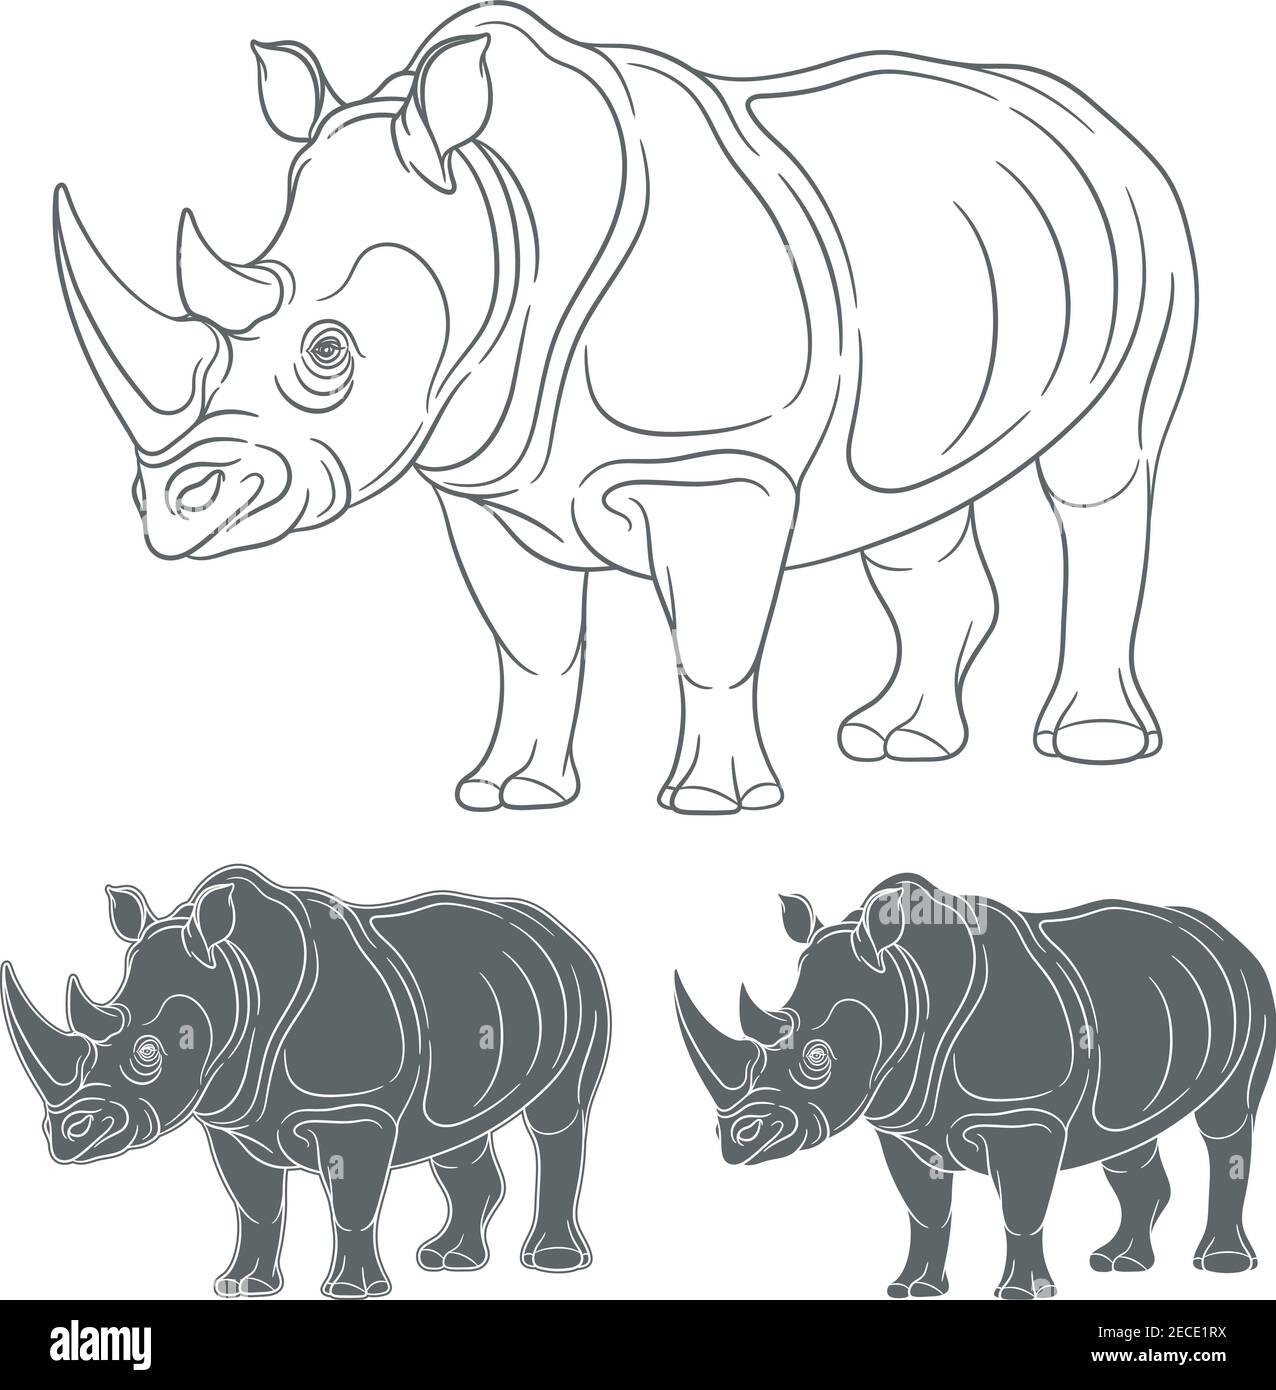 Ensemble d'images avec un rhinocéros. Objets isolés sur fond blanc. Illustration de Vecteur